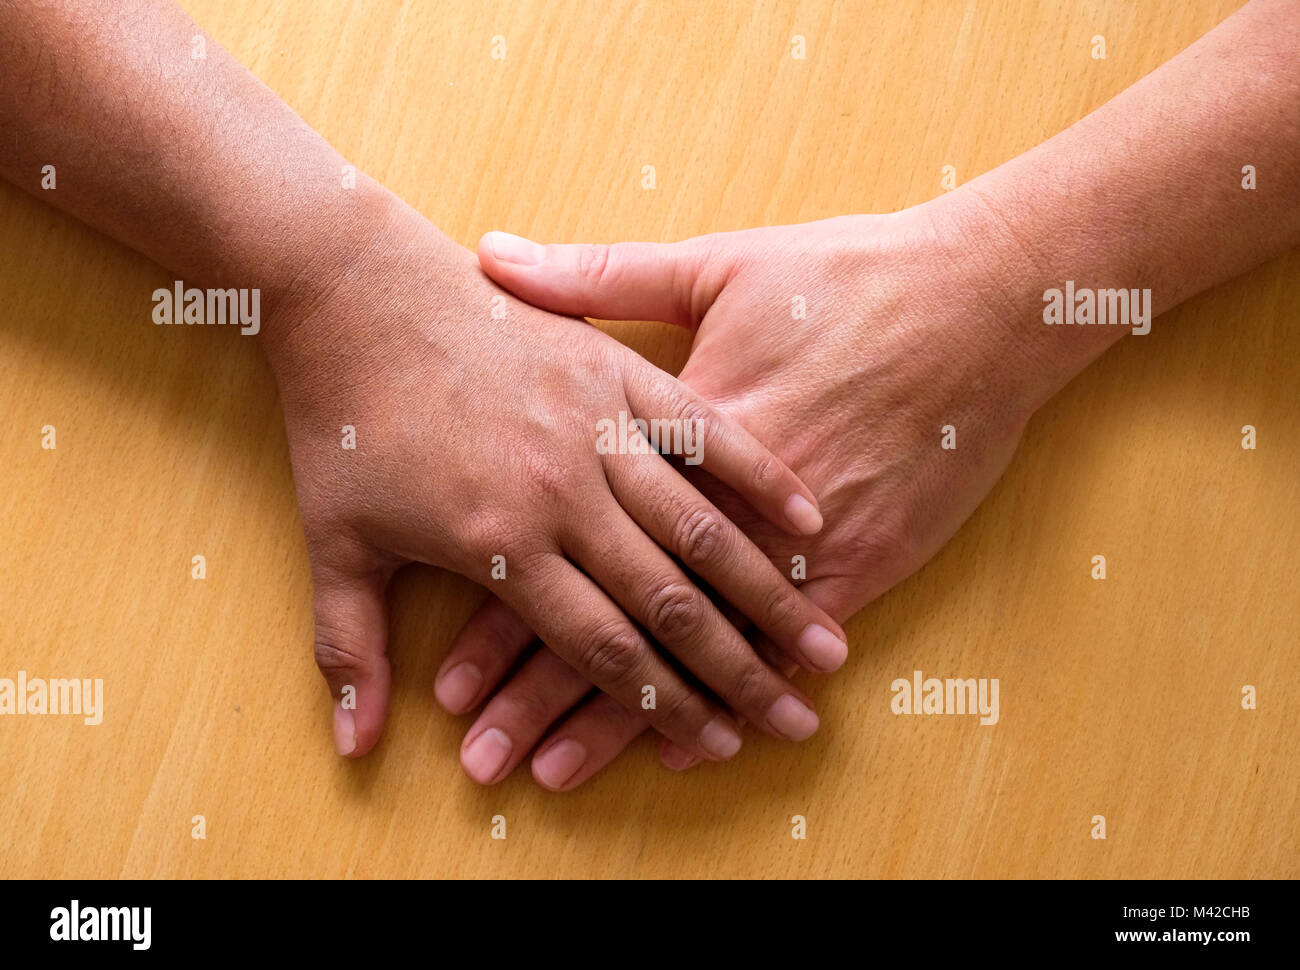 Auf zwei 50 Jahre alte weibliche Hände und Unterarme ontop gelegt, die obere Hand ist der Asiatischen und der unteren Hand ist kaukasisch, die Stockfoto